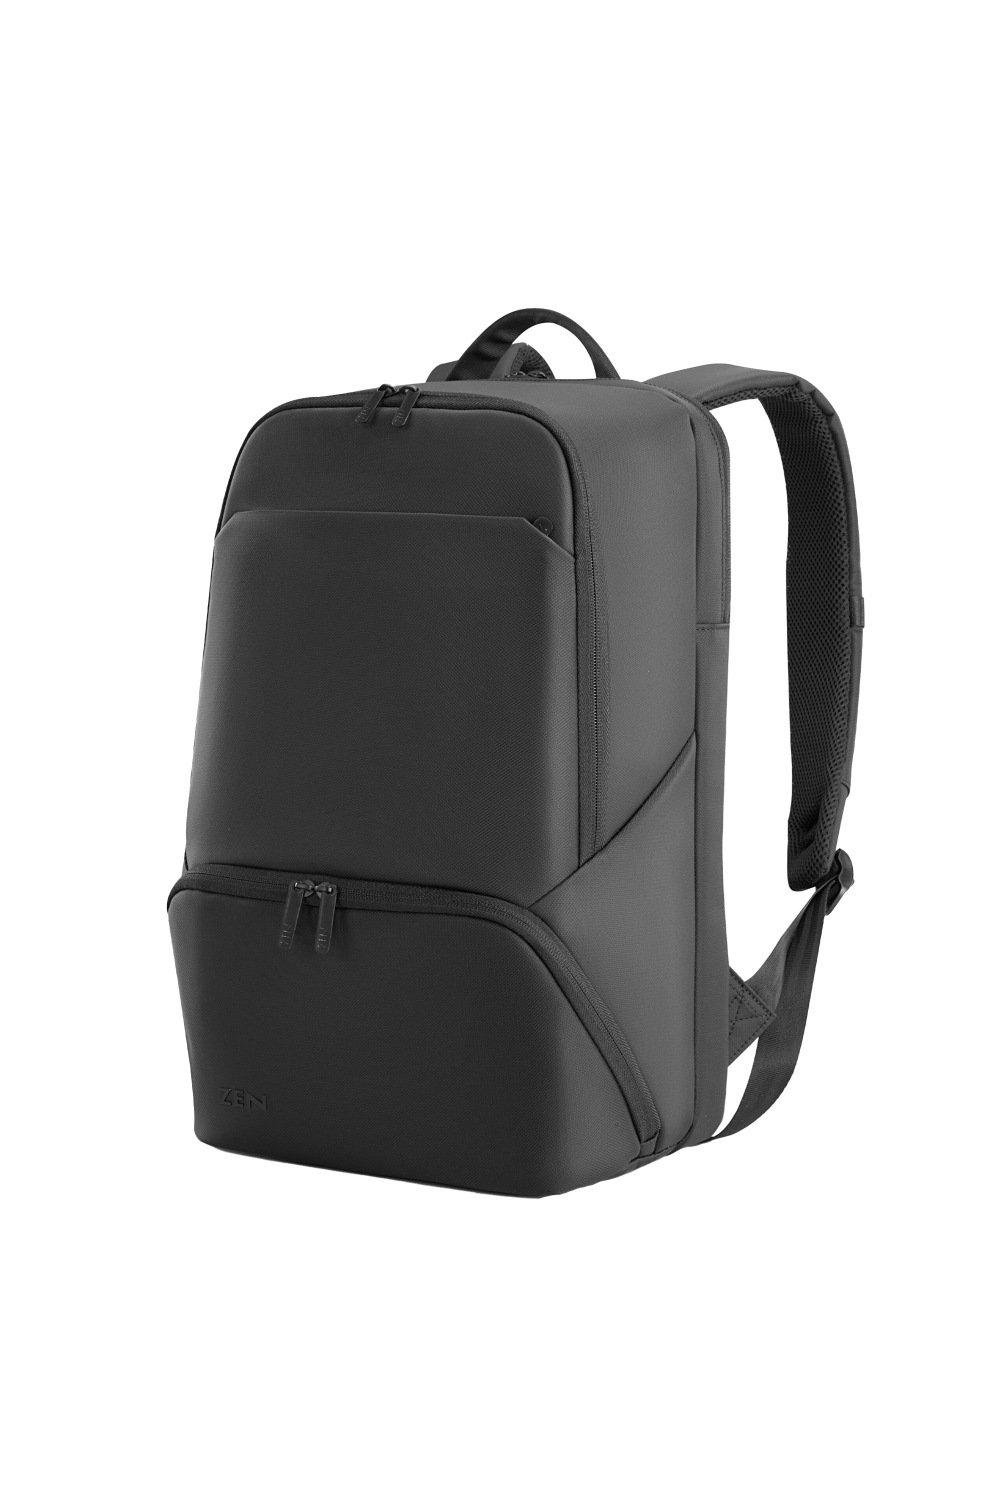 Рюкзак для ноутбука Interlaken Alpine Shugon, черный